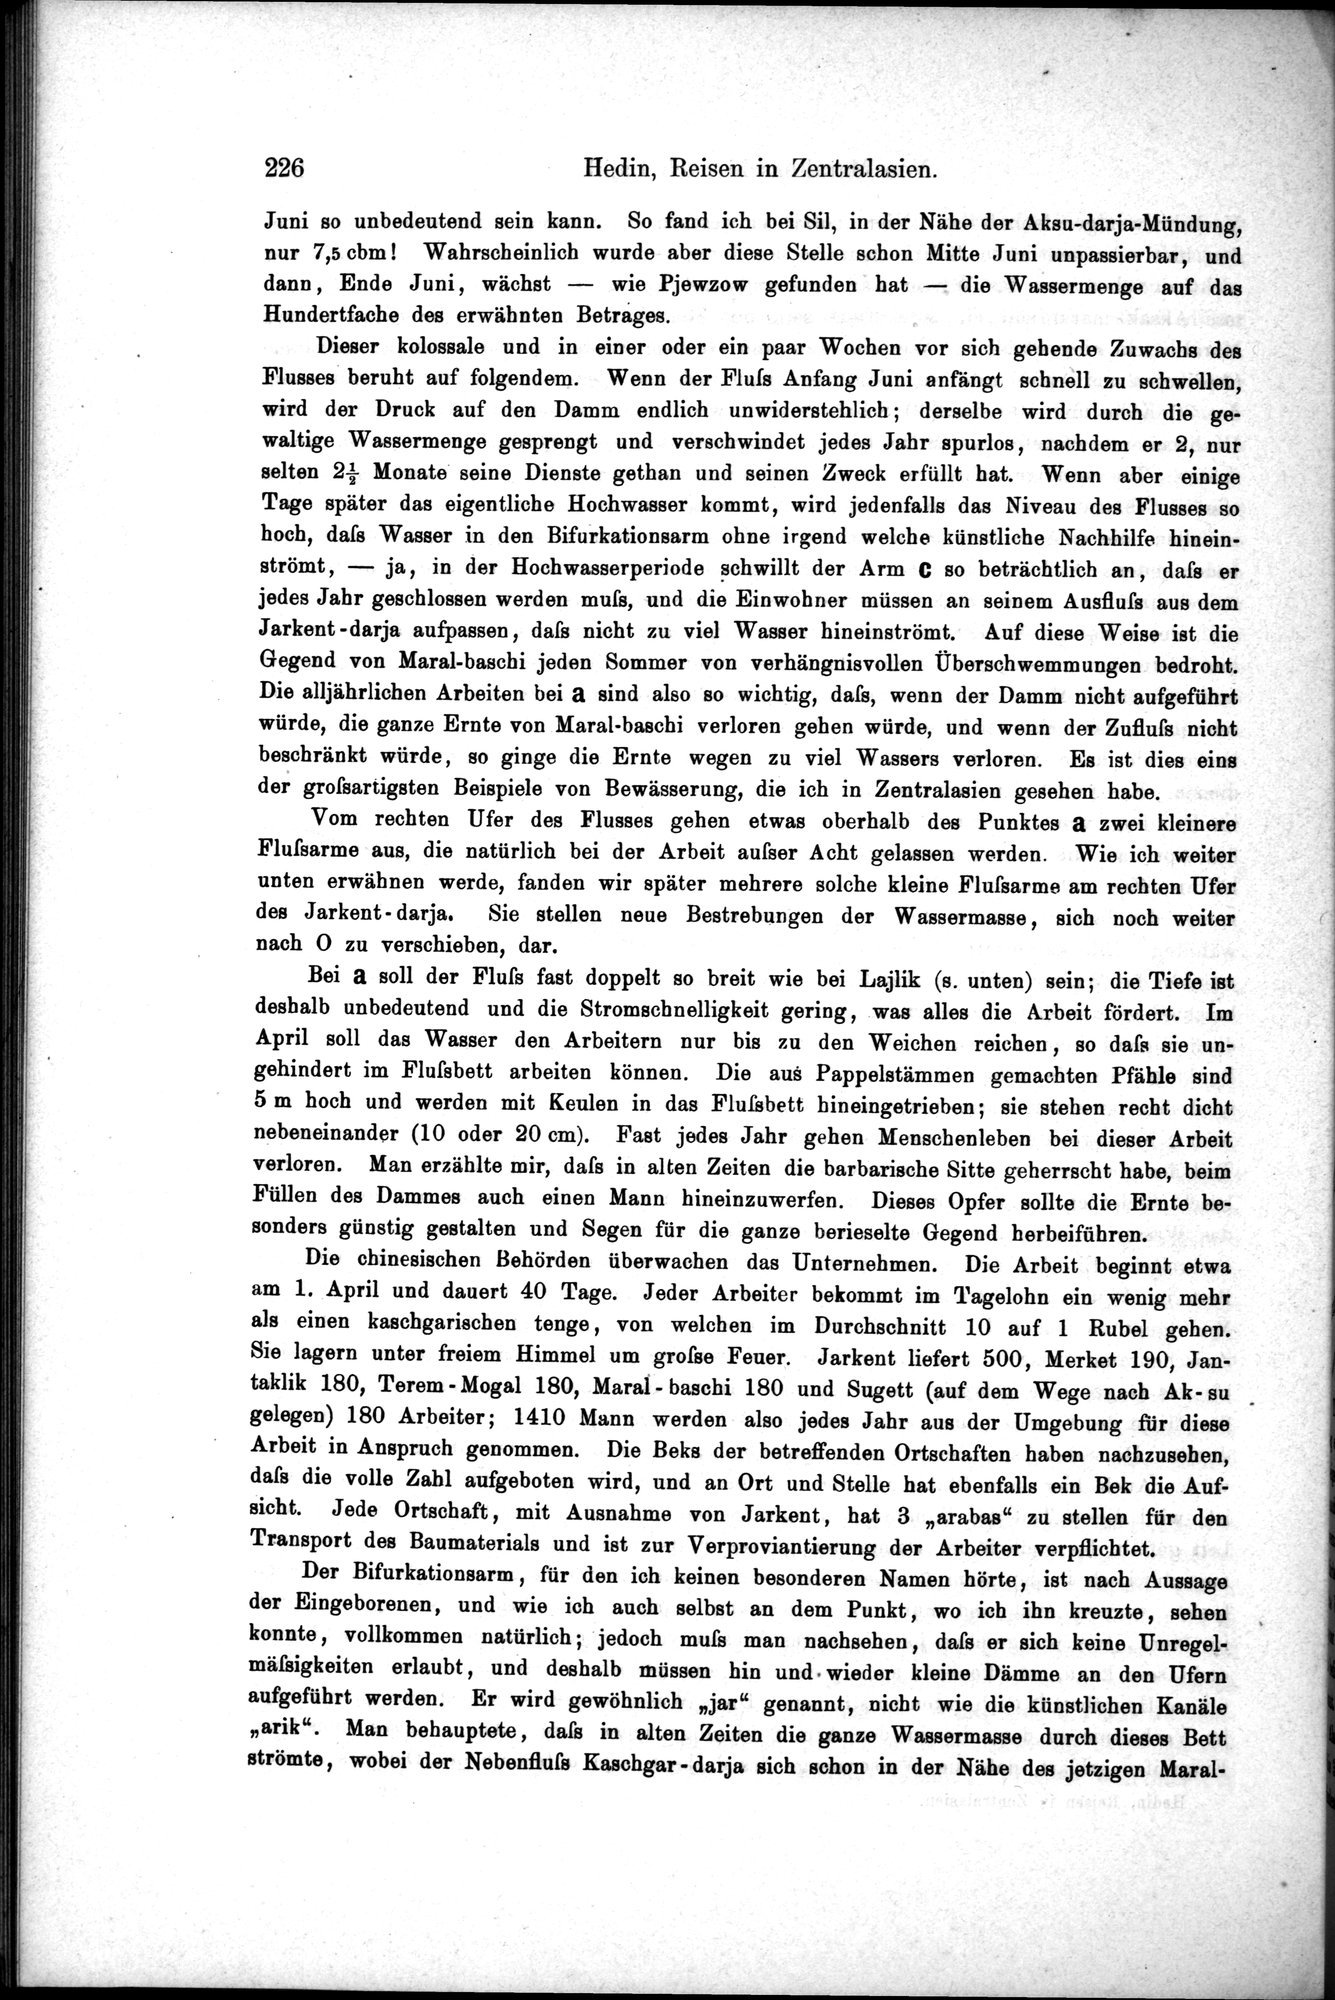 Die Geographische-Wissenschaftlichen Ergebnisse meiner Reisen in Zentralasien, 1894-1897 : vol.1 / Page 238 (Grayscale High Resolution Image)